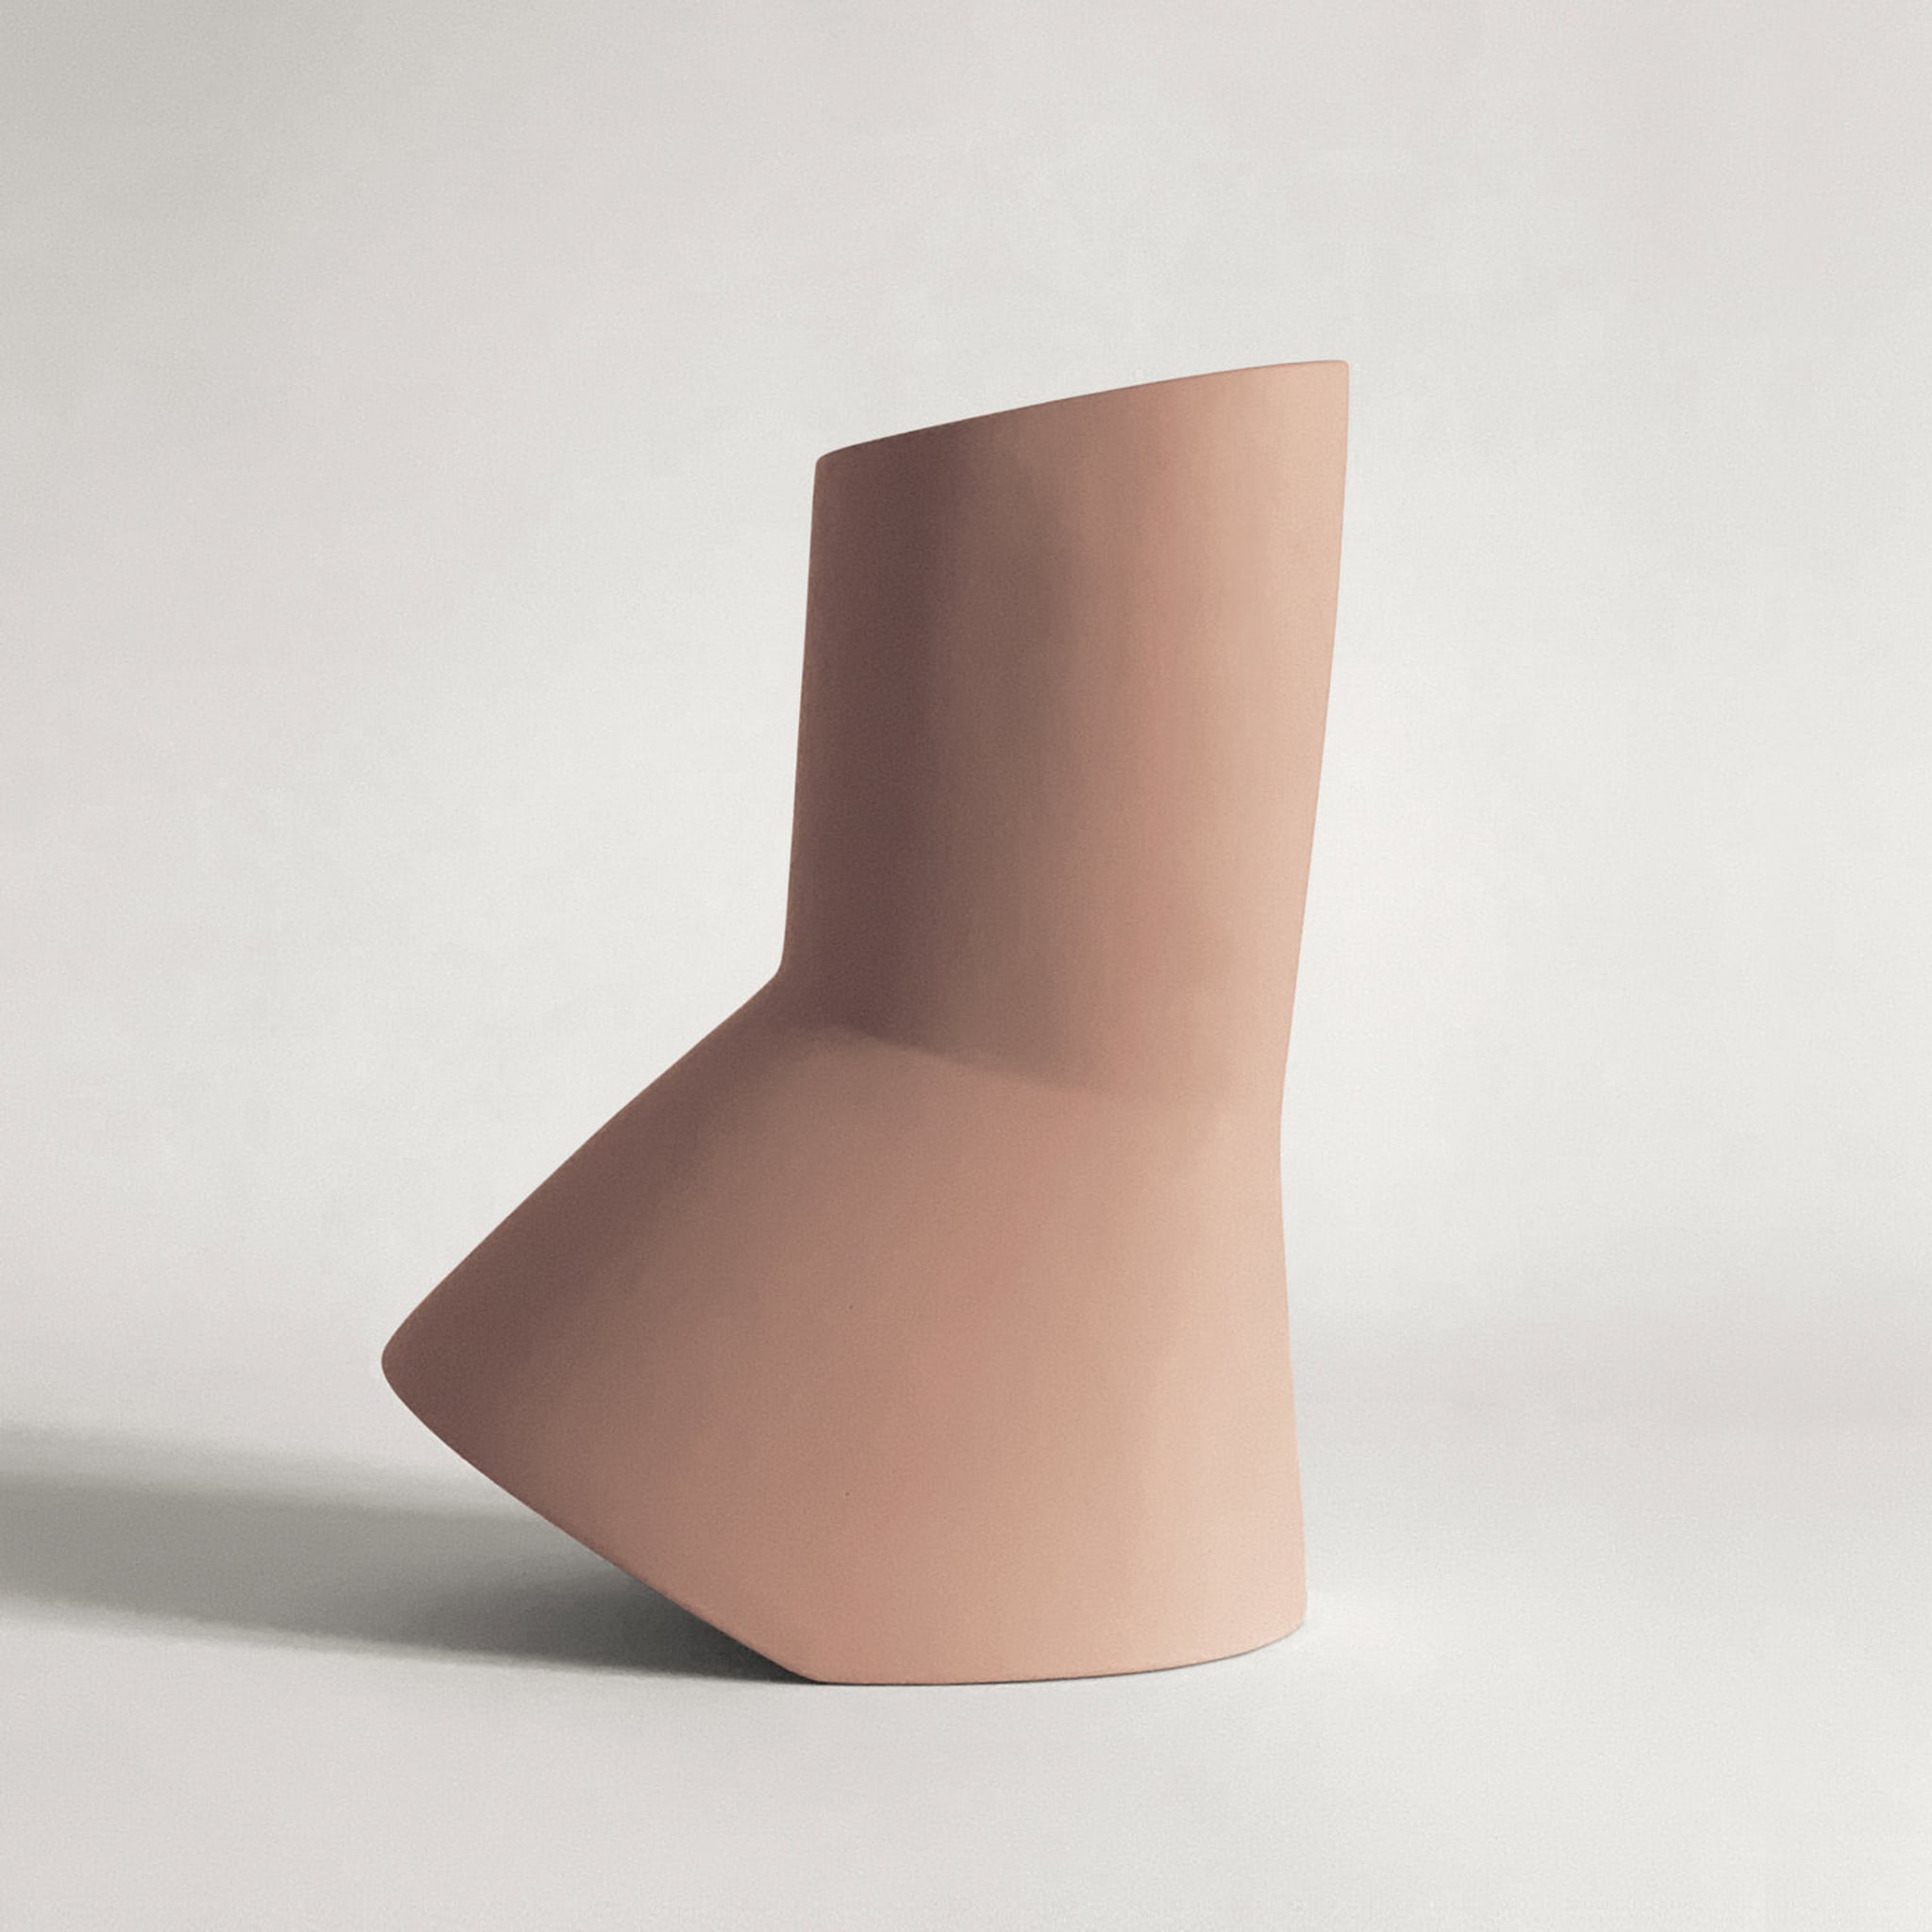 Menadi Peach Ceramic Vase - Alternative view 3